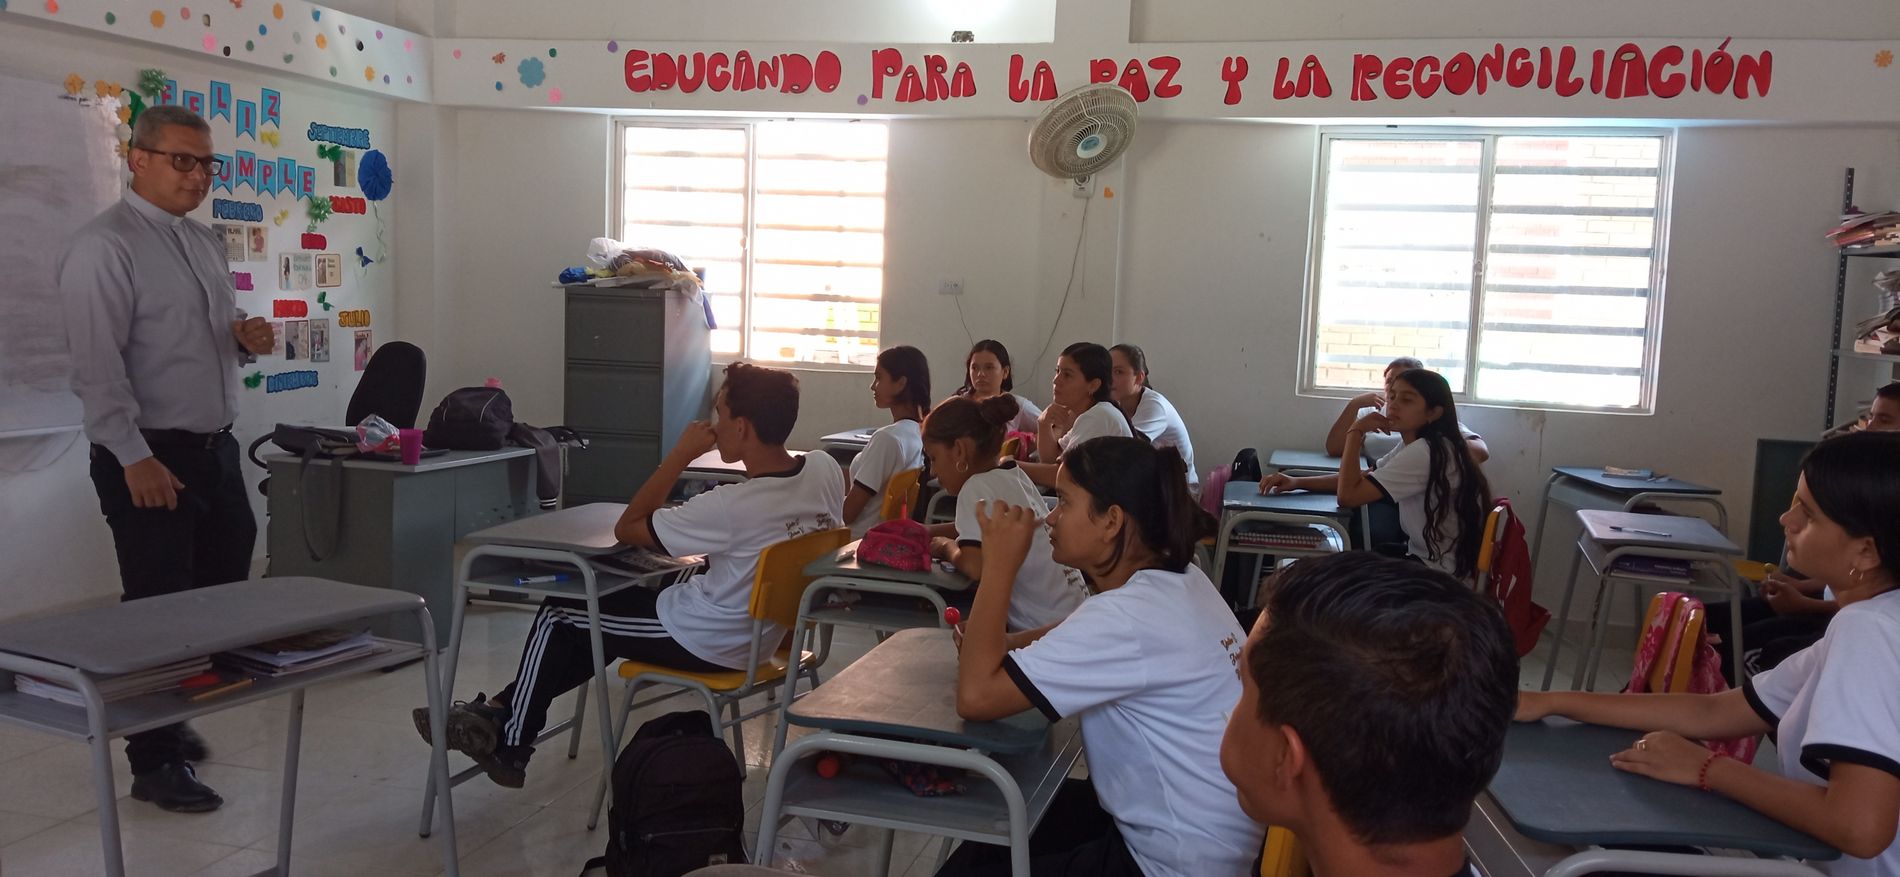 Ein Klassenzimmer mit Jugendlichen. Vorne steht ein ältere Lehrer im grauen Hemd.